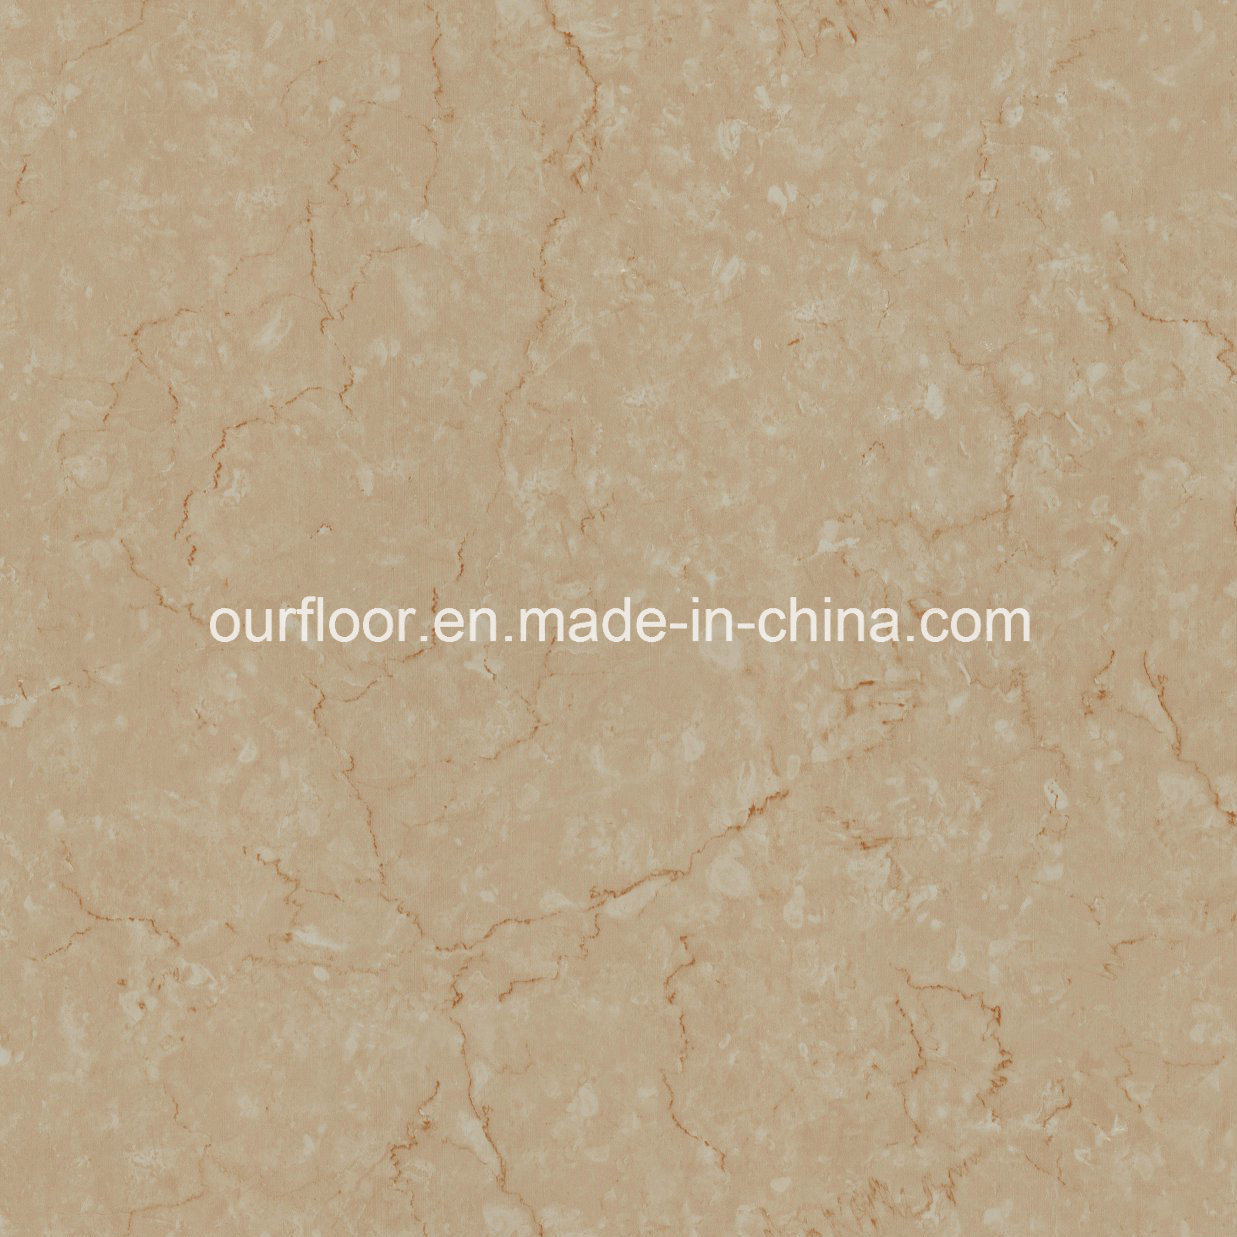 Marble-Grain WPC Vinyl Flooring, Stain Resistant, Anti-Skid (OF-558-5)